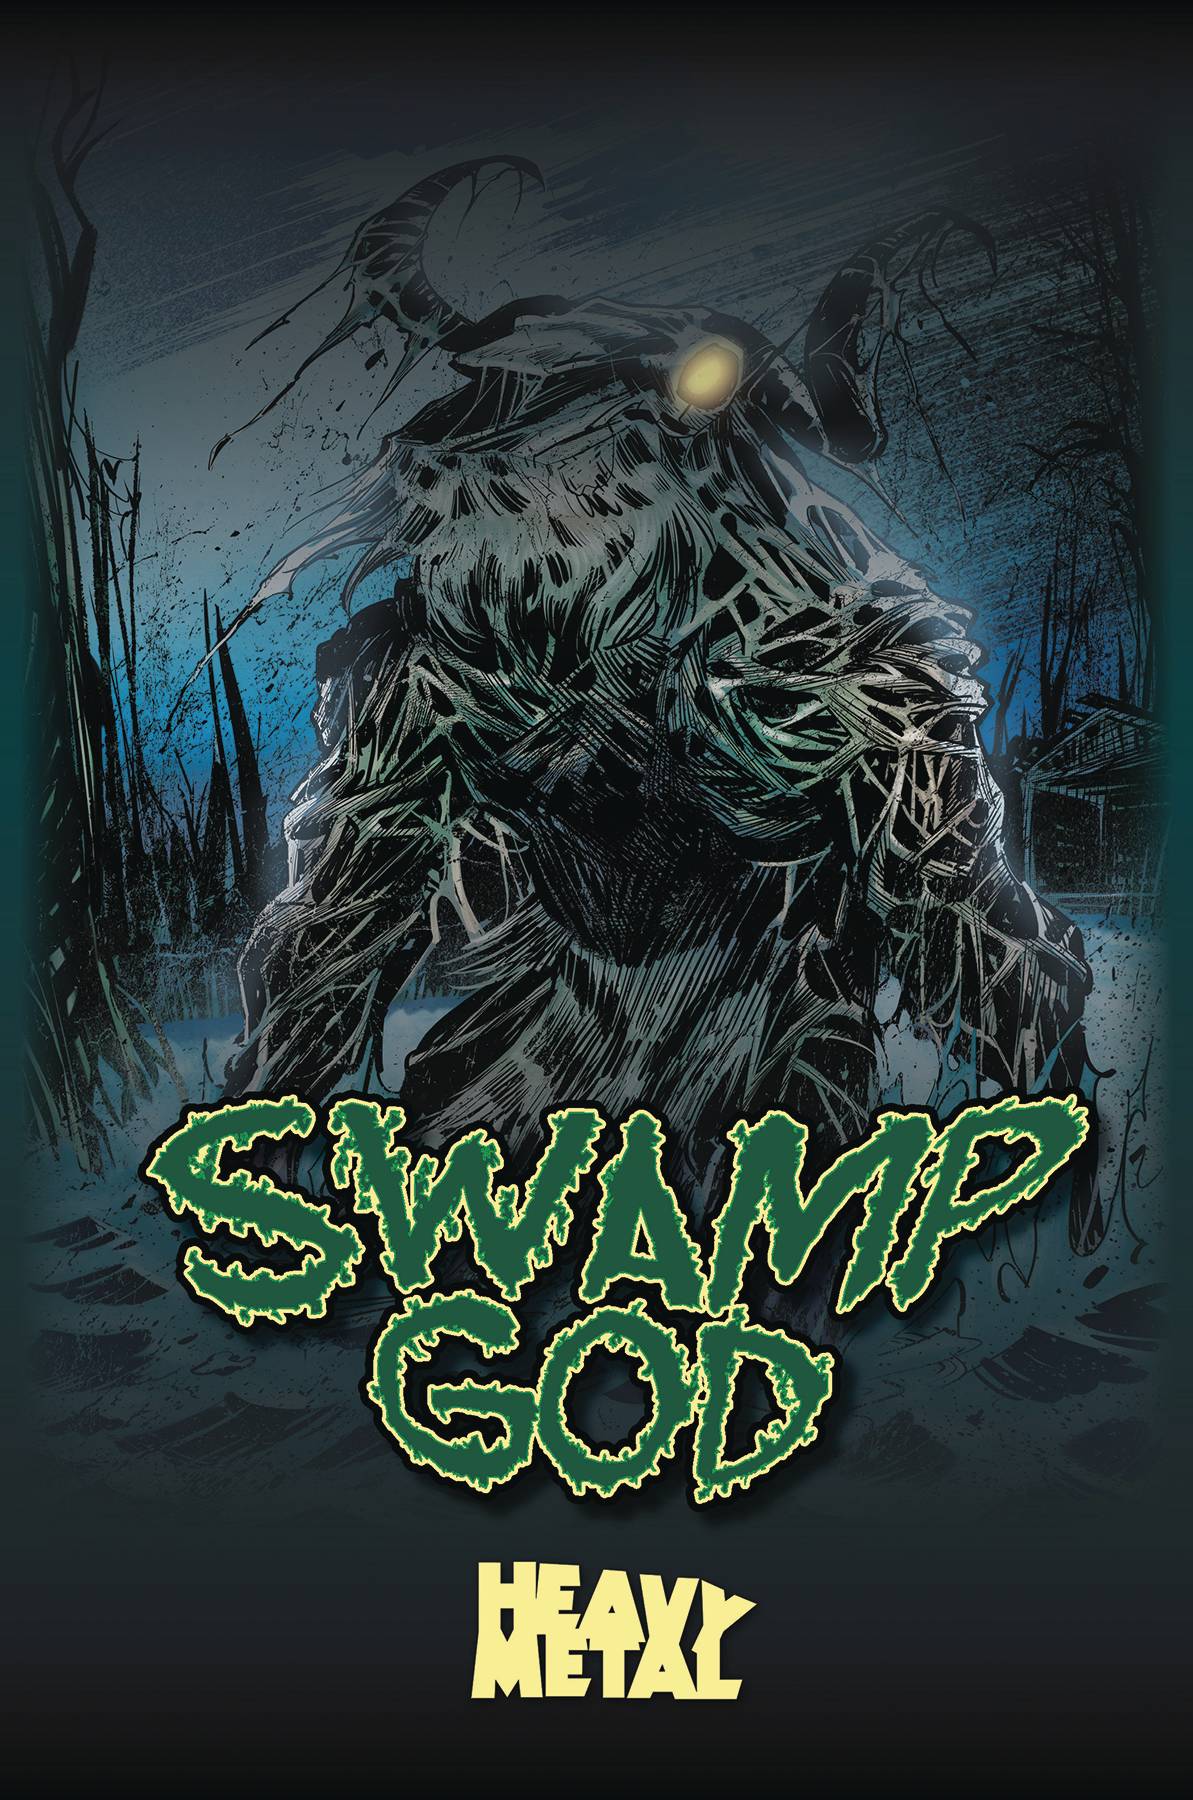 Swamp god